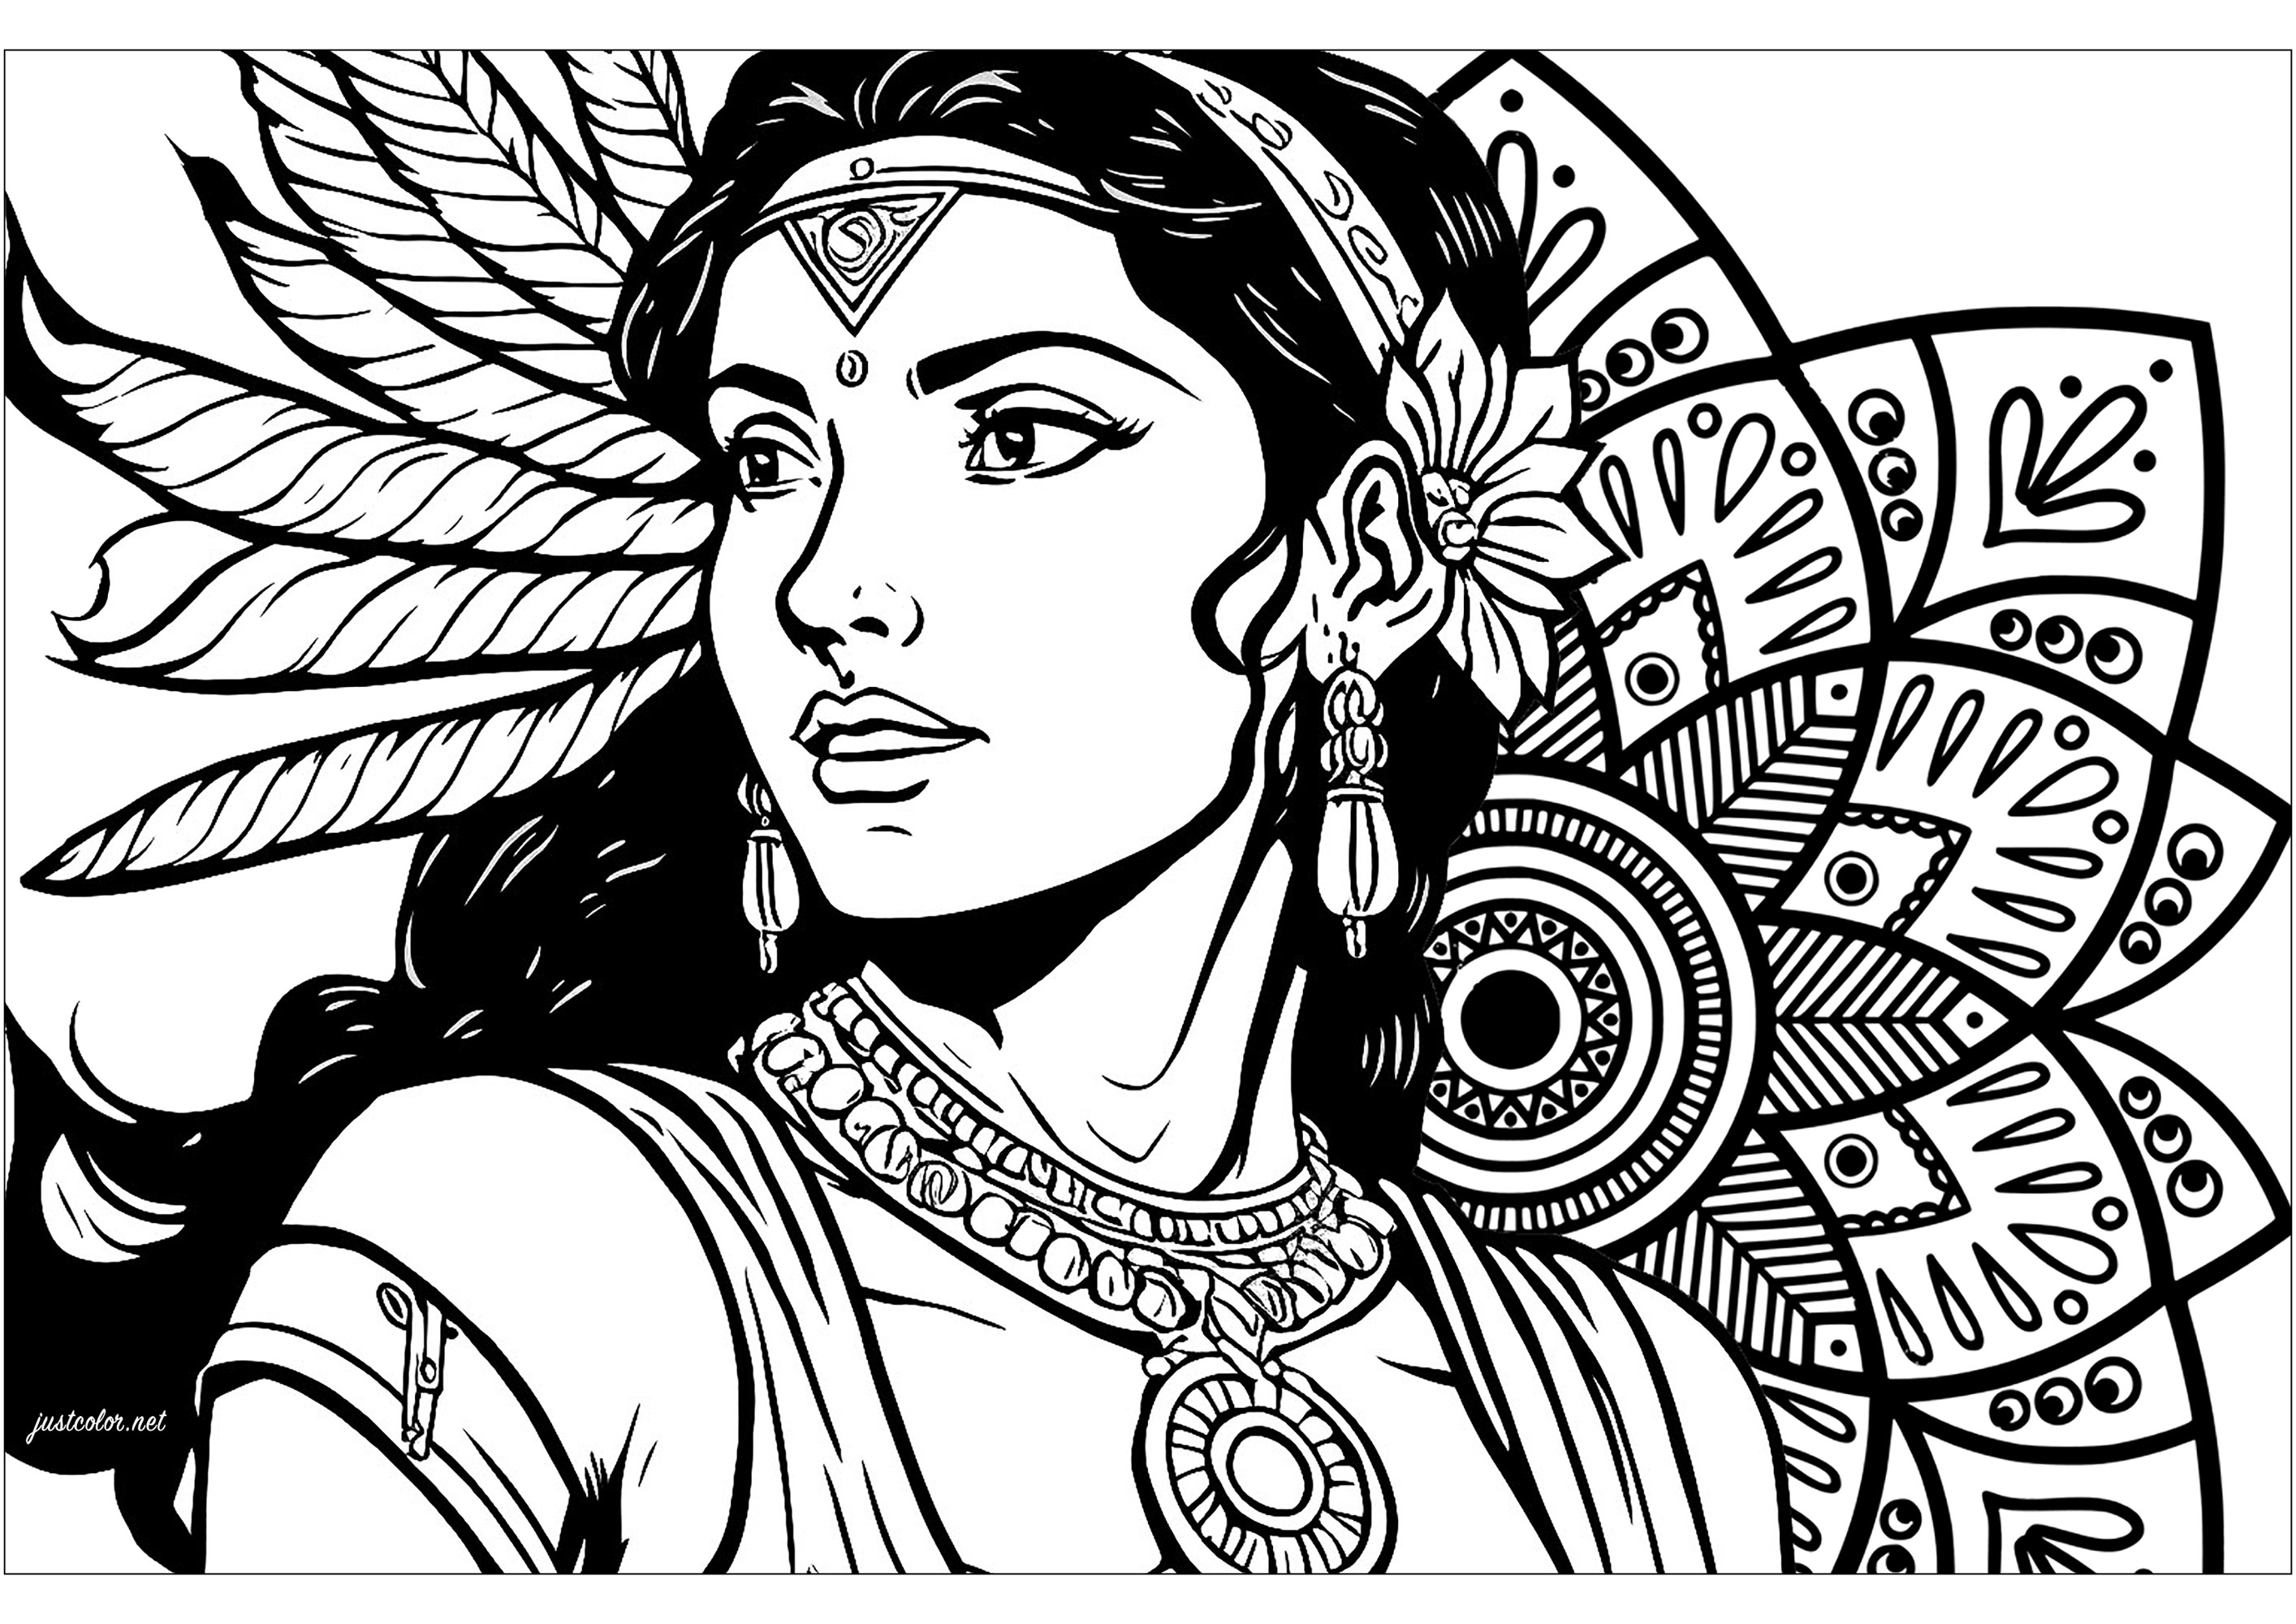 Magnífica coloración de una mujer india y un mandala inspirado en motivos indios. El dibujo de esta mujer india de mirada penetrante nos recuerda la fuerza interior que yace latente en nosotros, mientras que el mandala inspirado en los patrones indios simboliza la armonía universal, invitando a la paz interior.